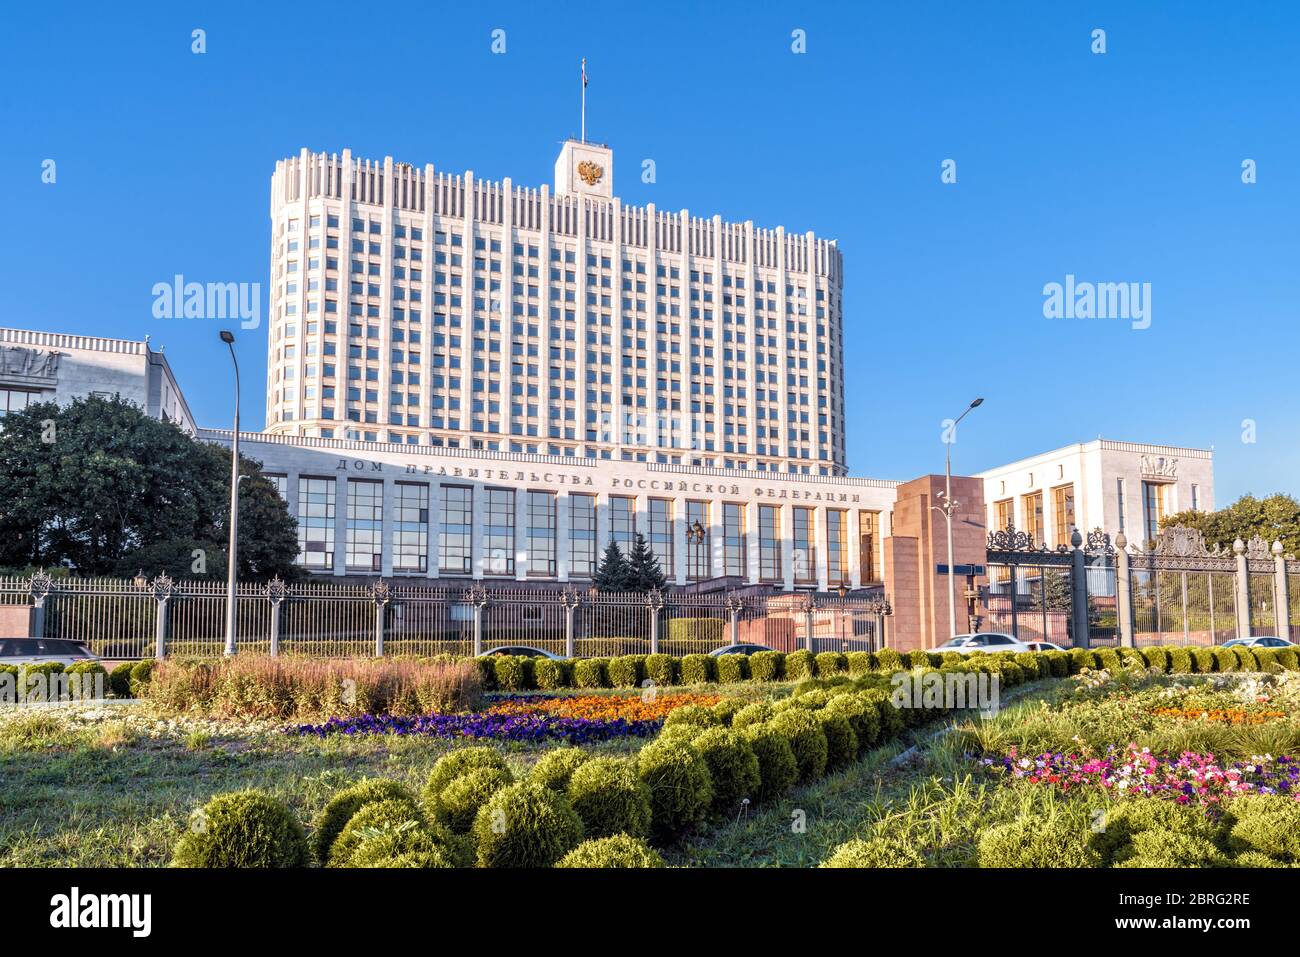 Haus der Regierung der Russischen Föderation in Moskau, Russland. Schöne Aussicht auf das russische Weiße Haus im Sommer. Modernes Staatsgebäude in Mos Stockfoto